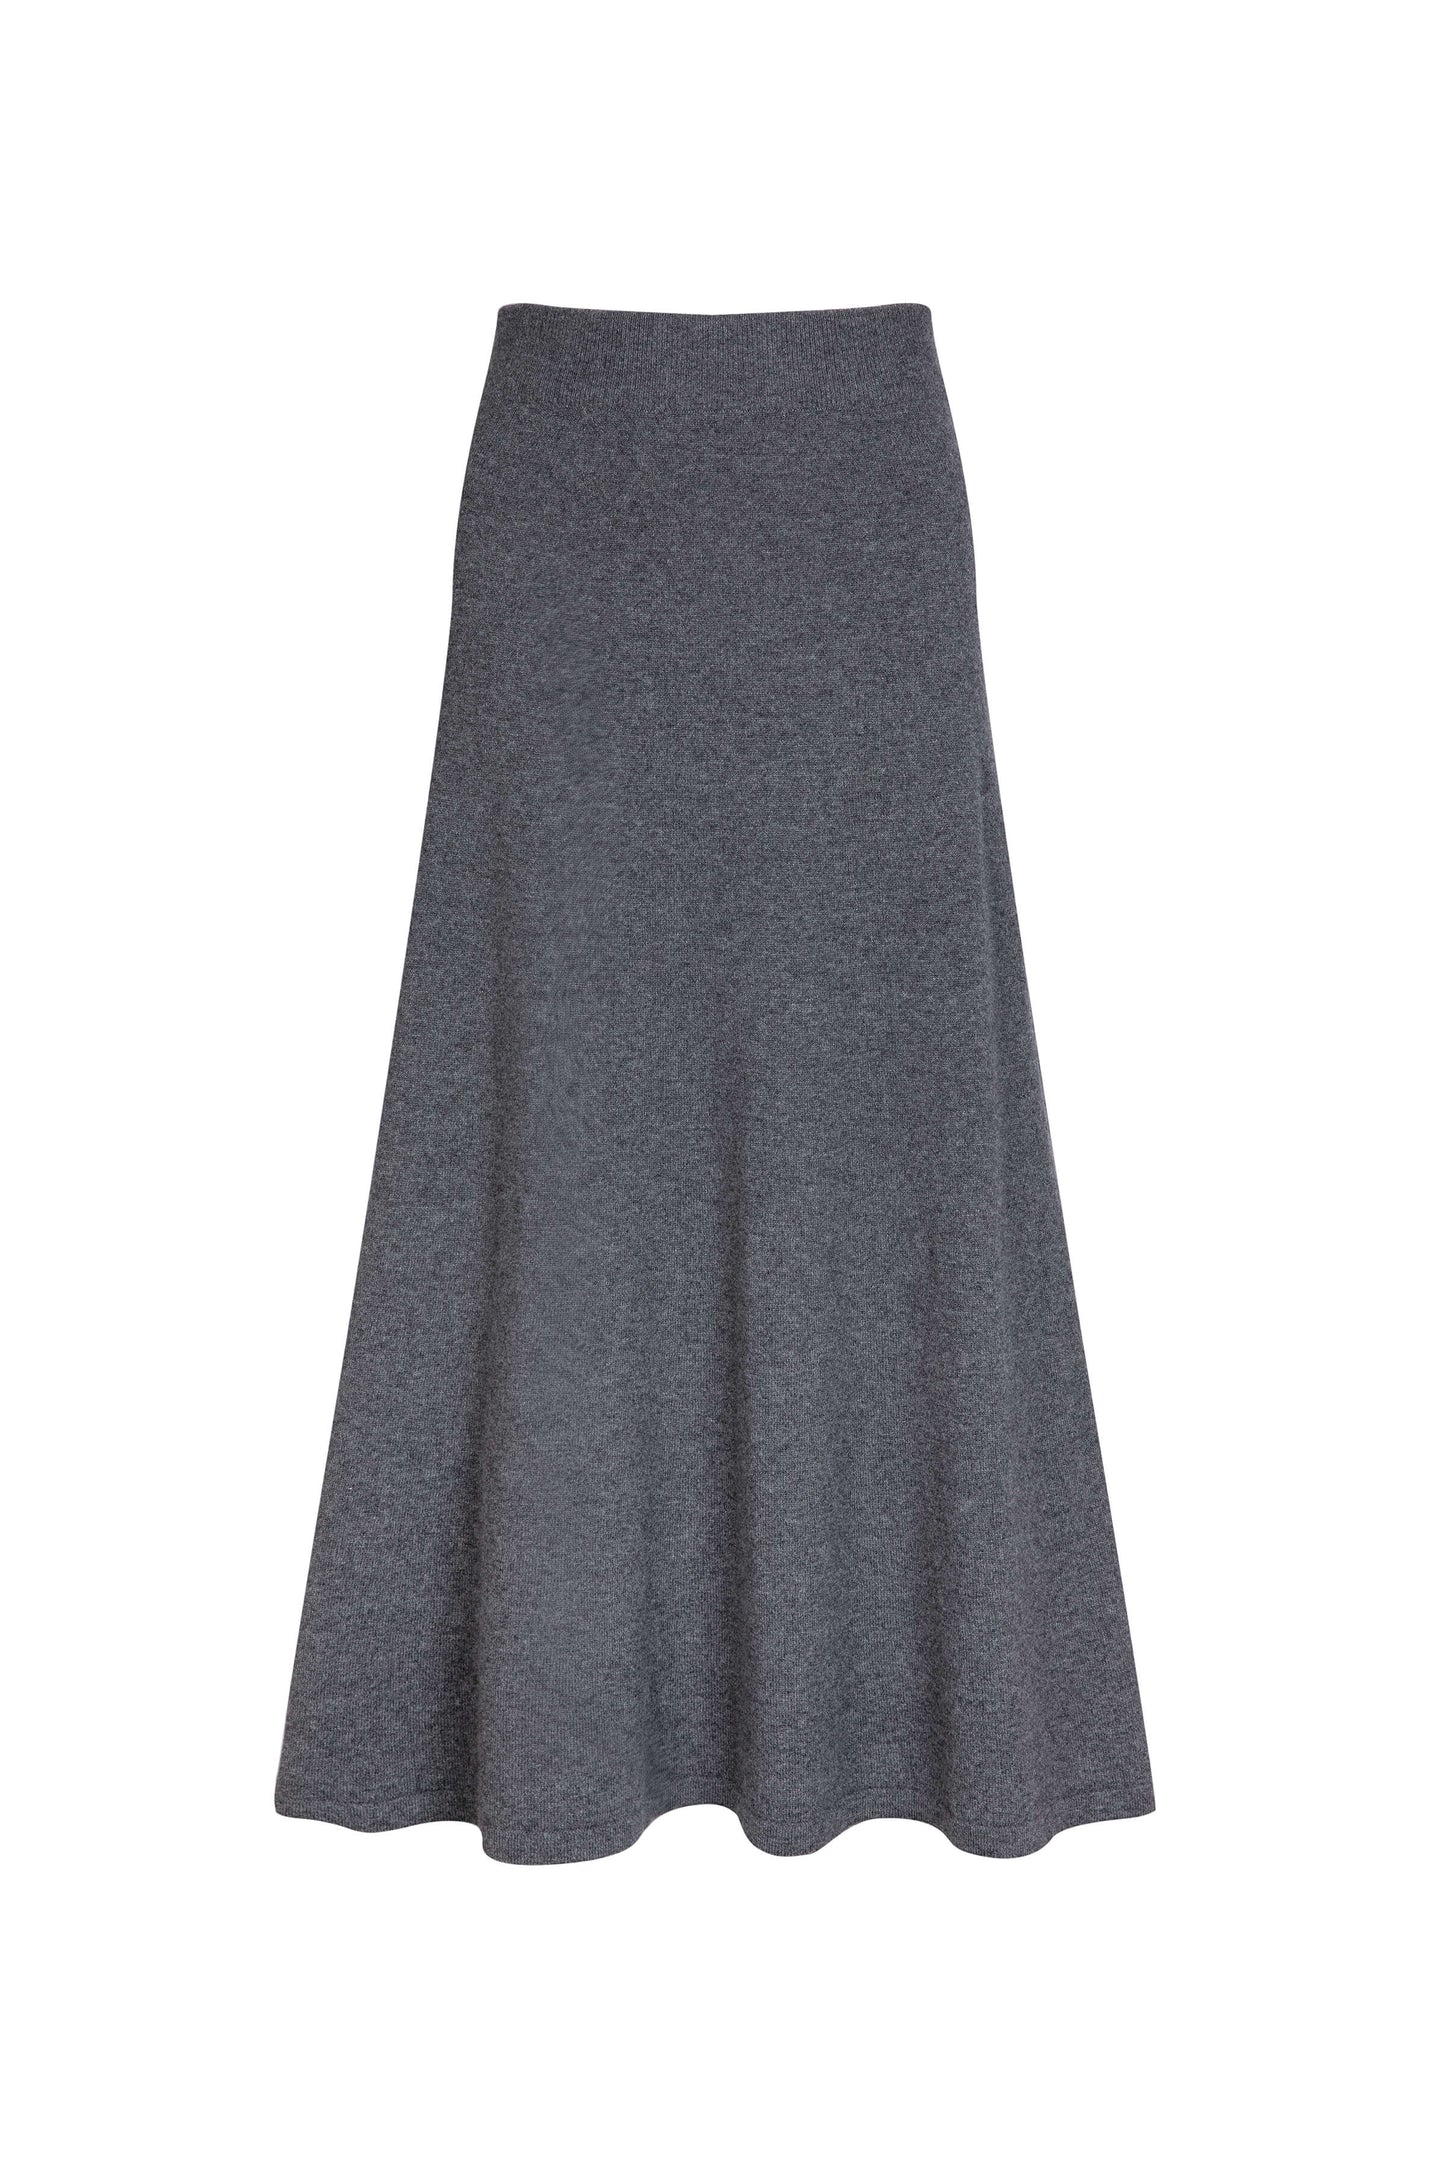 Cashmere A-Line Skirt